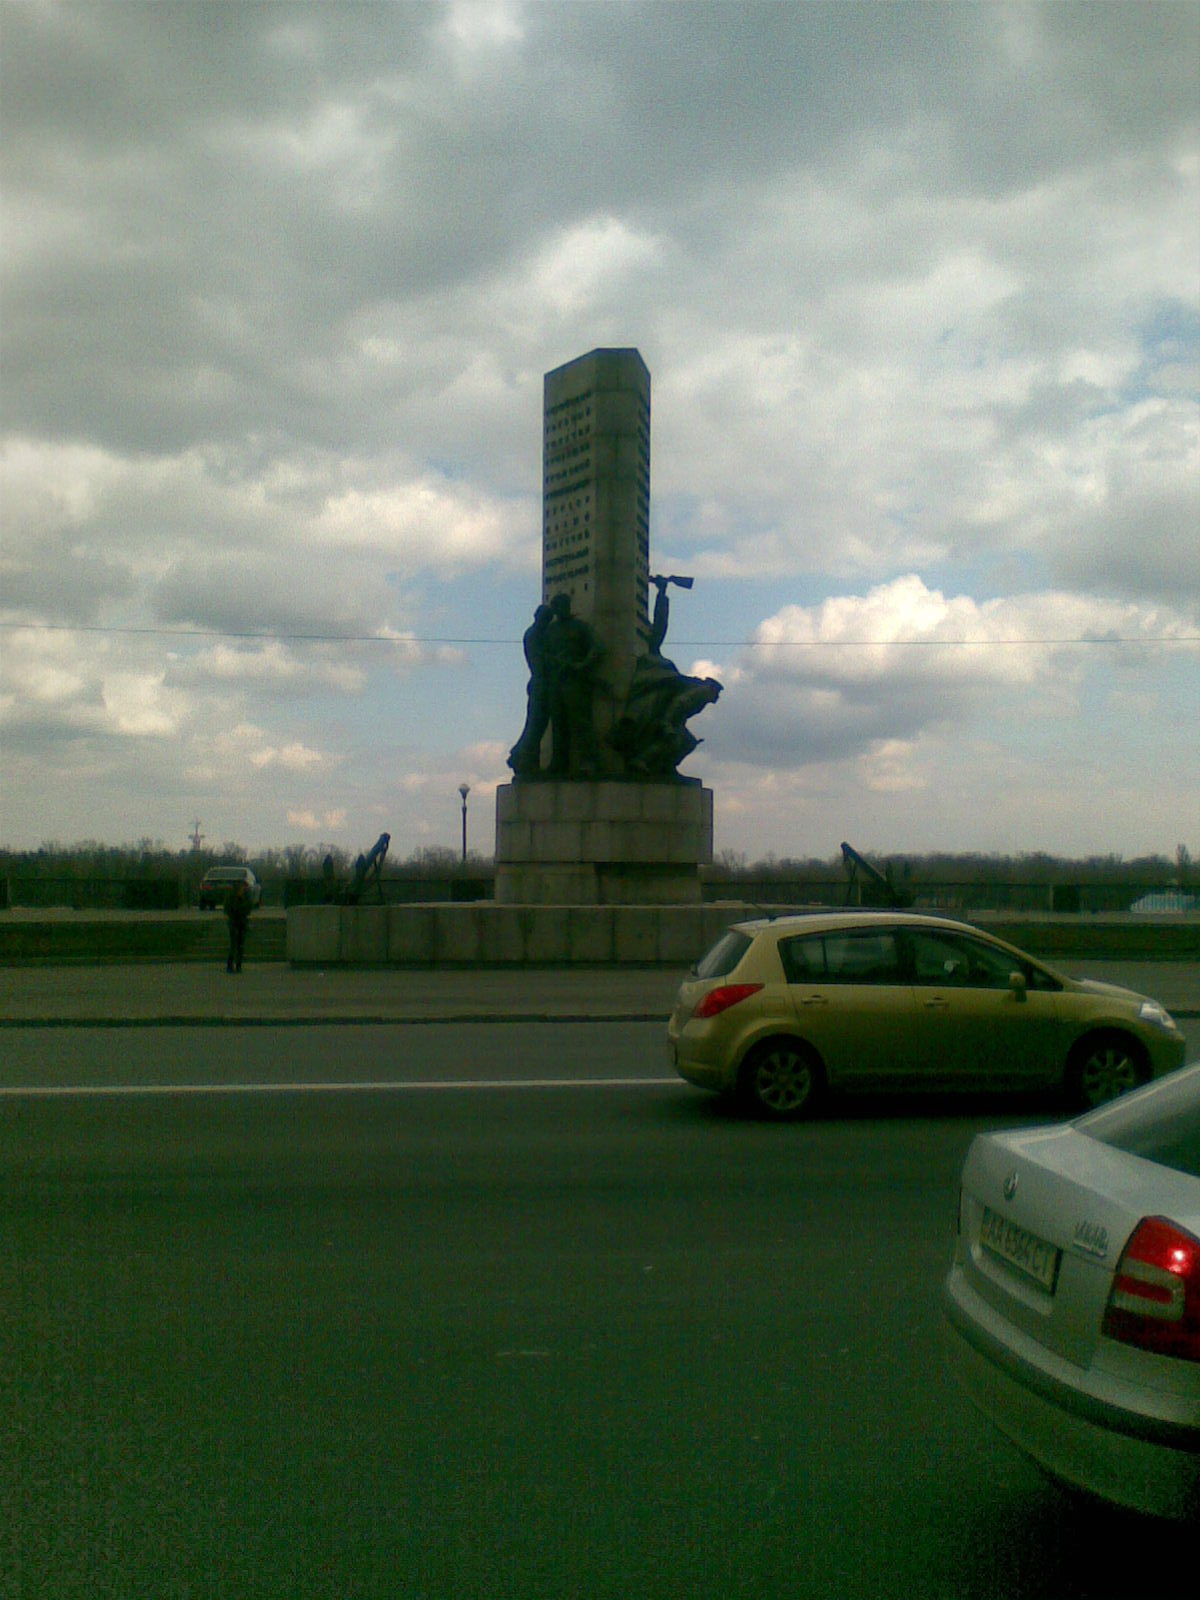 Памятник возле речного вокзала - Киев, Украина фото #2783